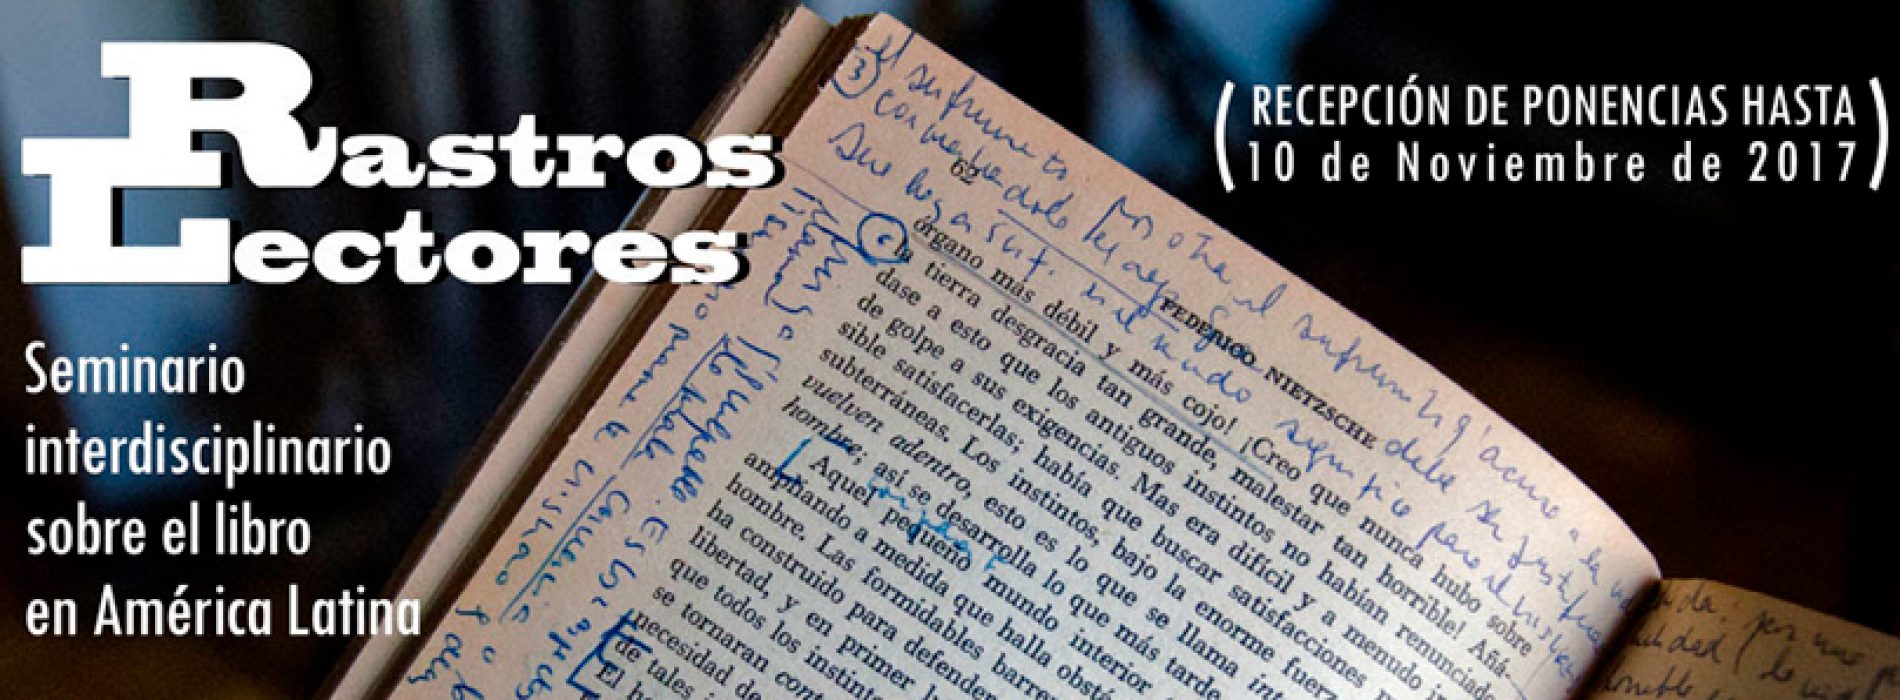 Convocatoria a Seminario insterdisciplinario sobre el libro en América Latina #RastrosLectores